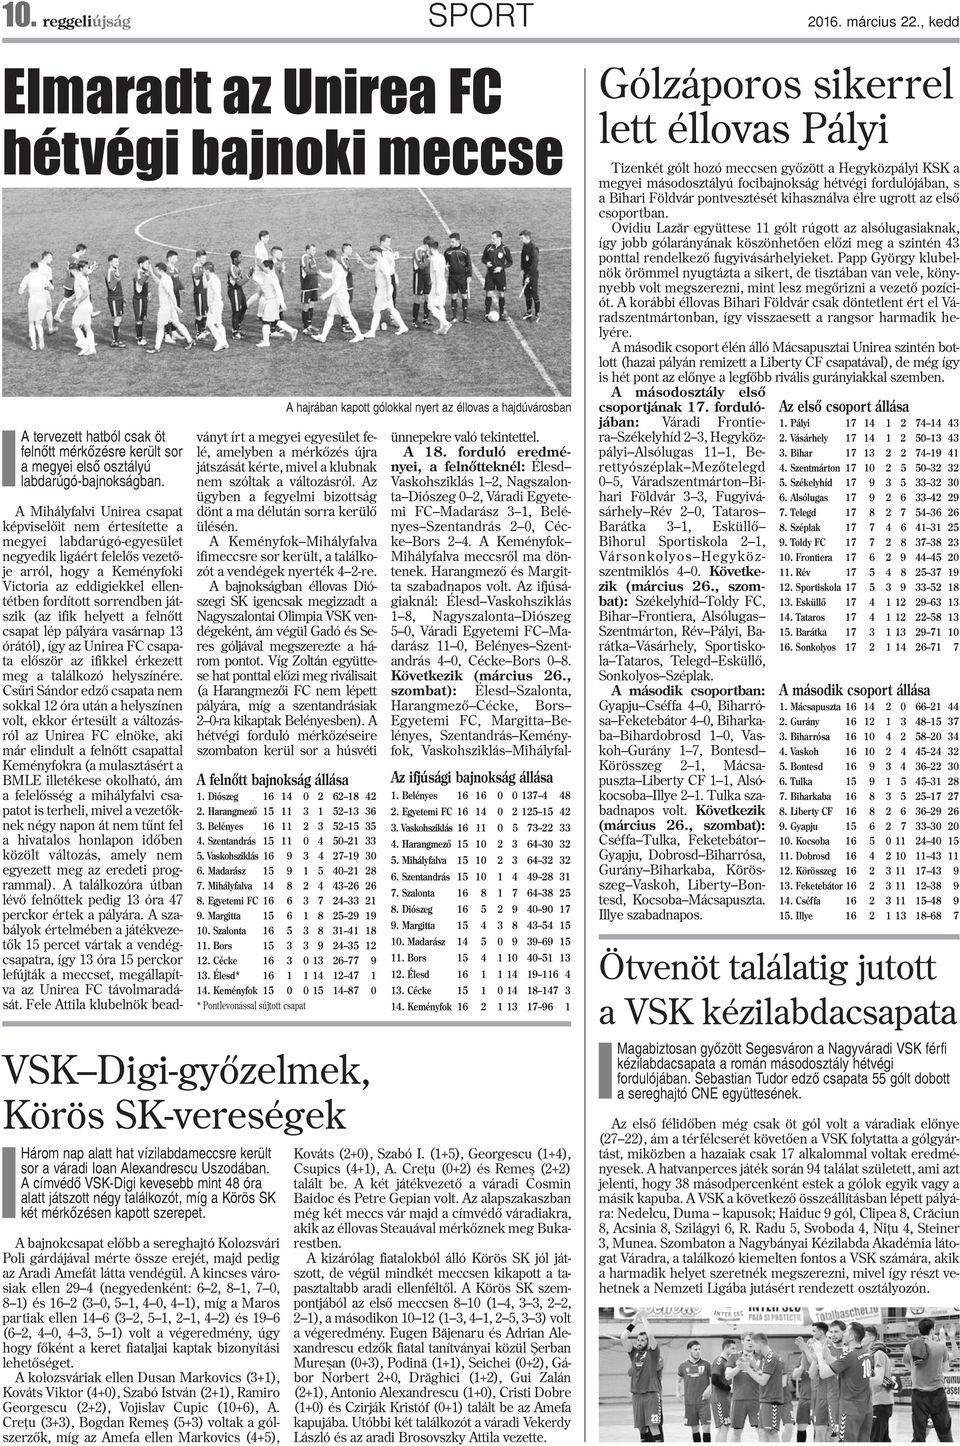 A címvédõ VSK-Digi kevesebb mint 48 óra alatt játszott négy találkozót, míg a Körös SK két mérkõzésen kapott szerepet.